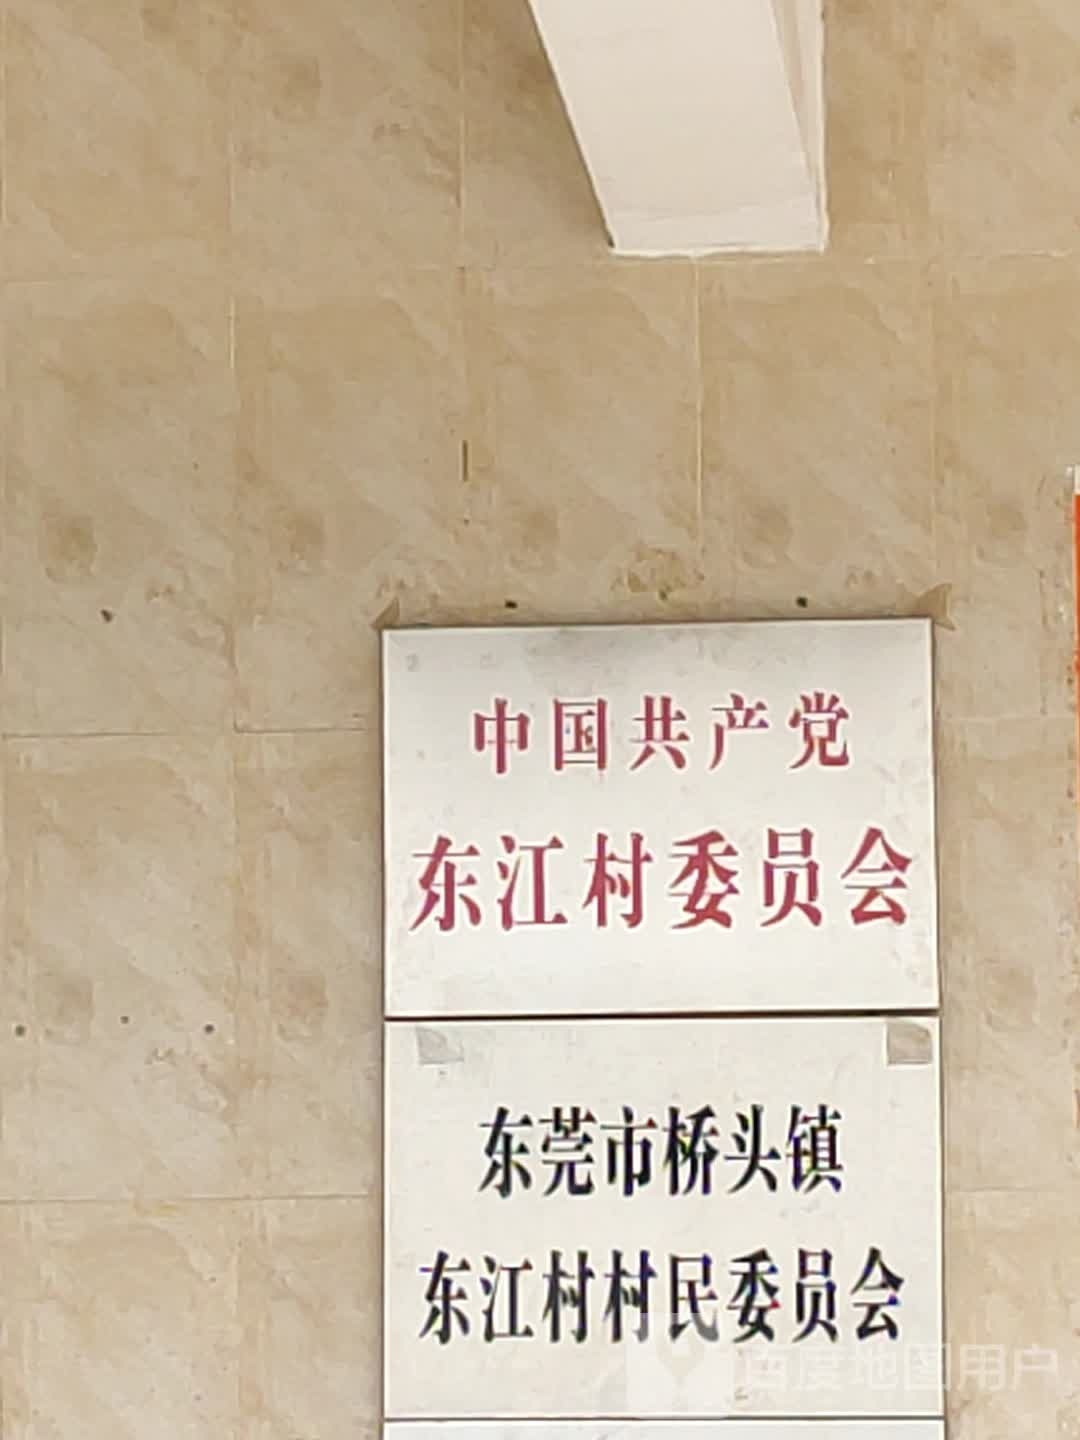 东江村民委员会